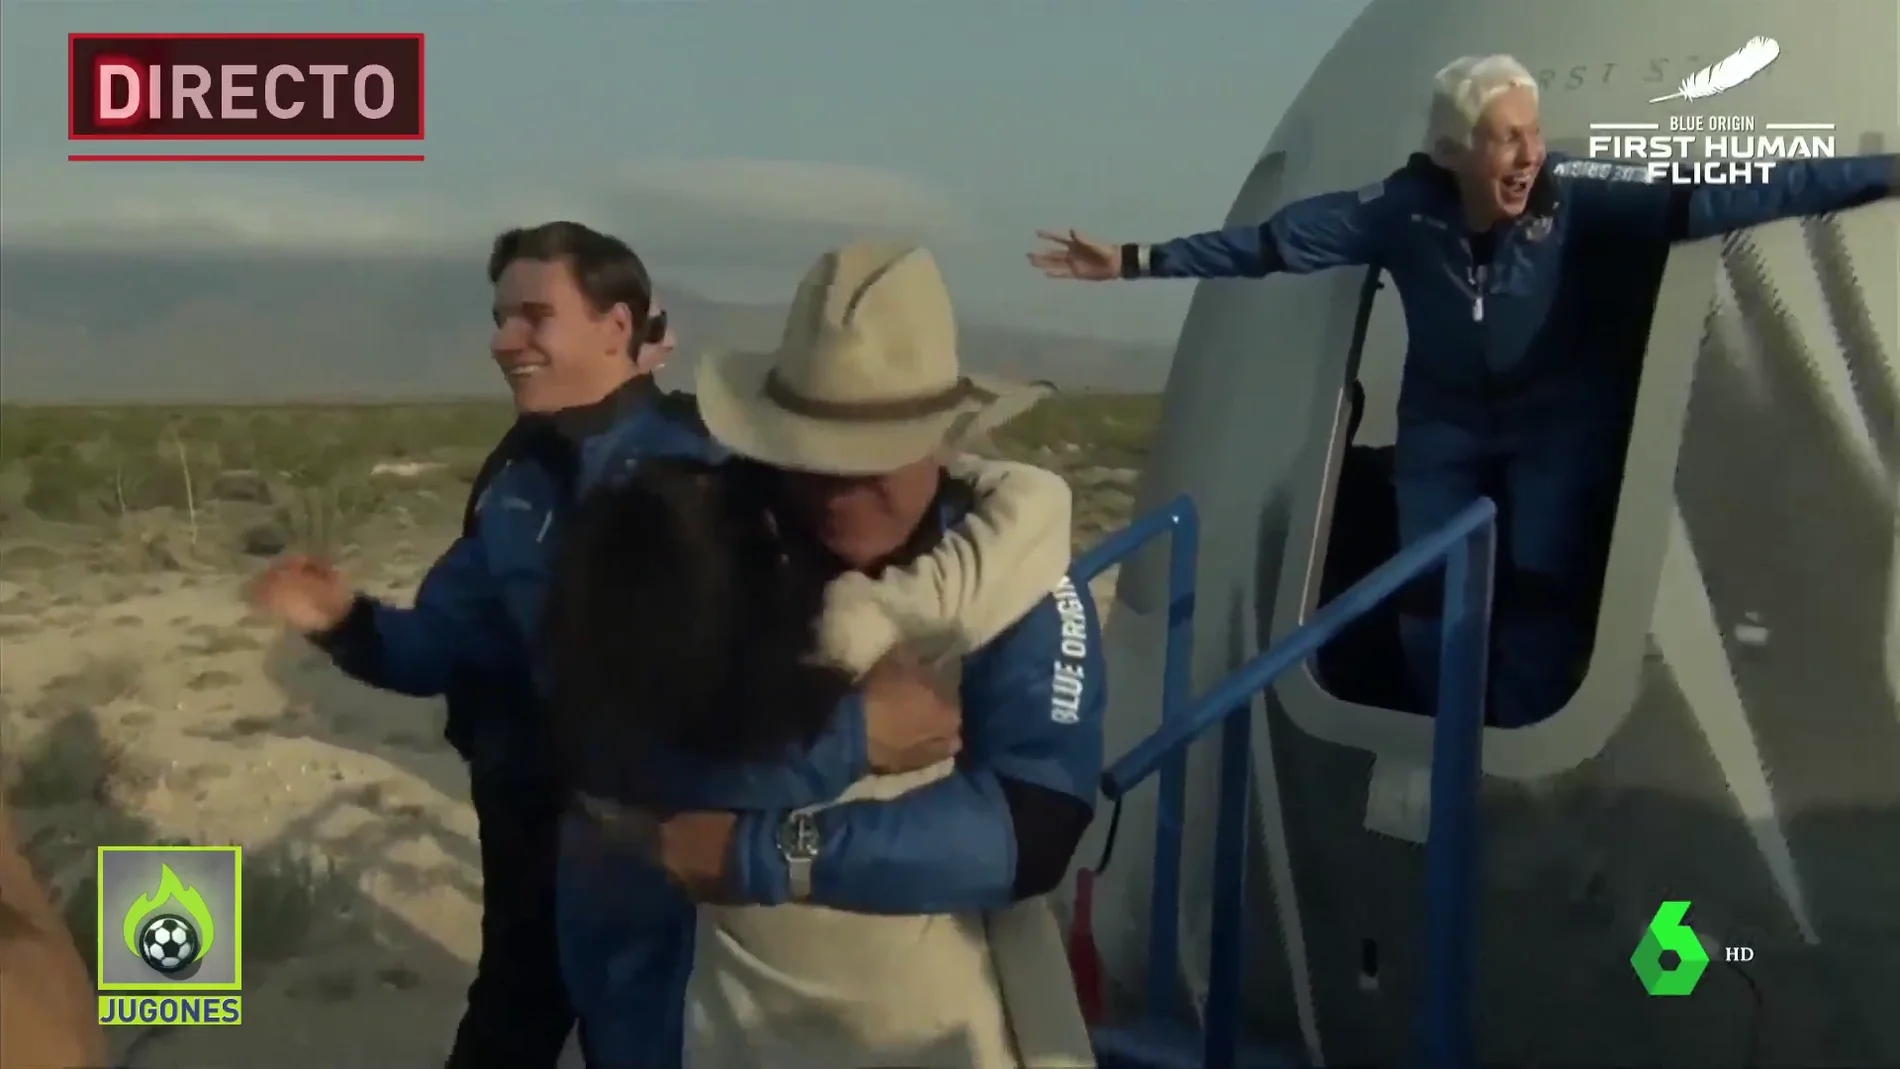 Vídeo en directo: Jeff Bezos viaja al espacio en la nave New Shepard con Blue Origin,